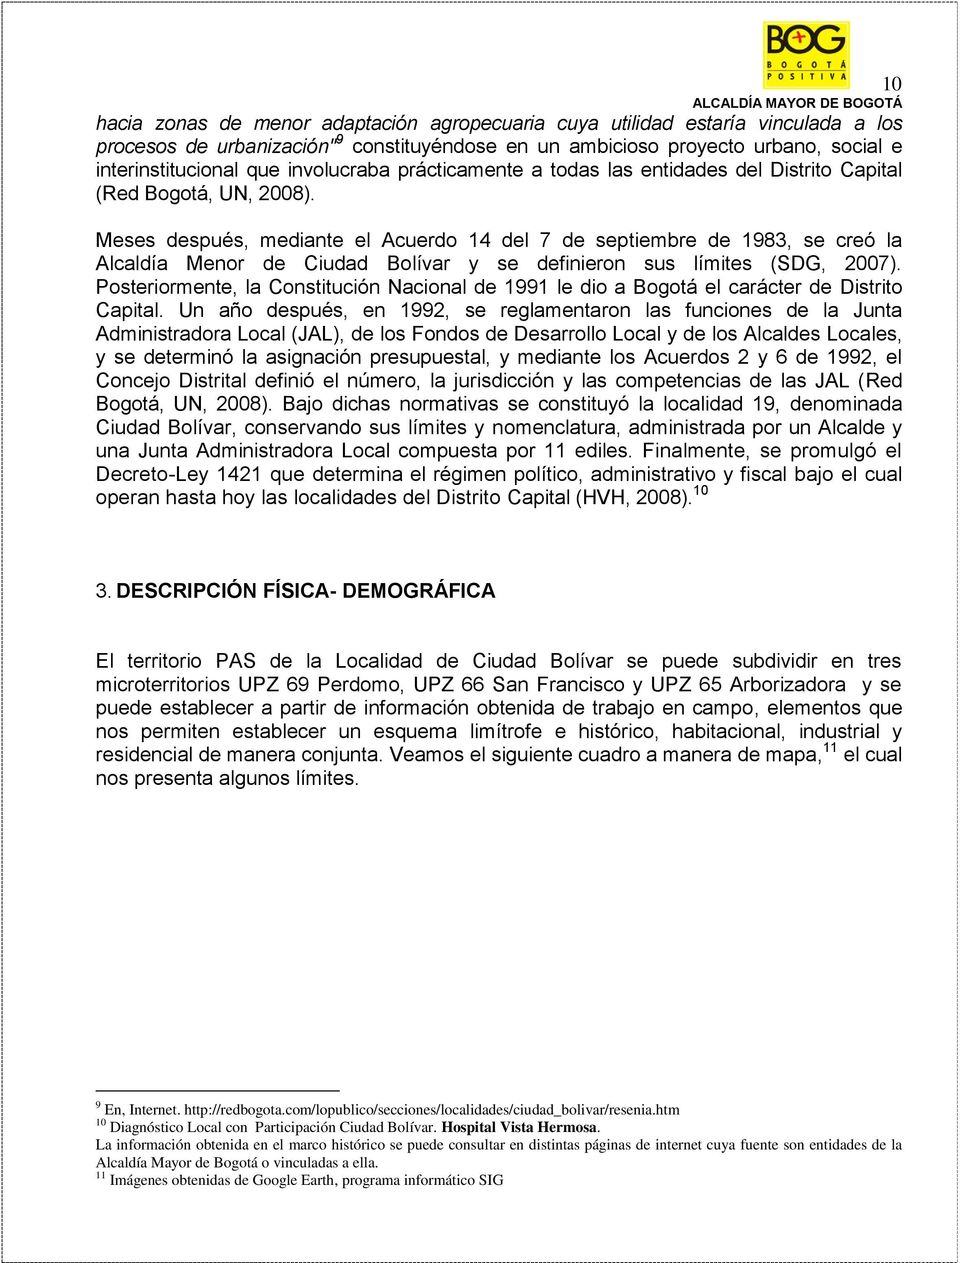 Meses después, mediante el Acuerdo 14 del 7 de septiembre de 1983, se creó la Alcaldía Menor de Ciudad Bolívar y se definieron sus límites (SDG, 2007).